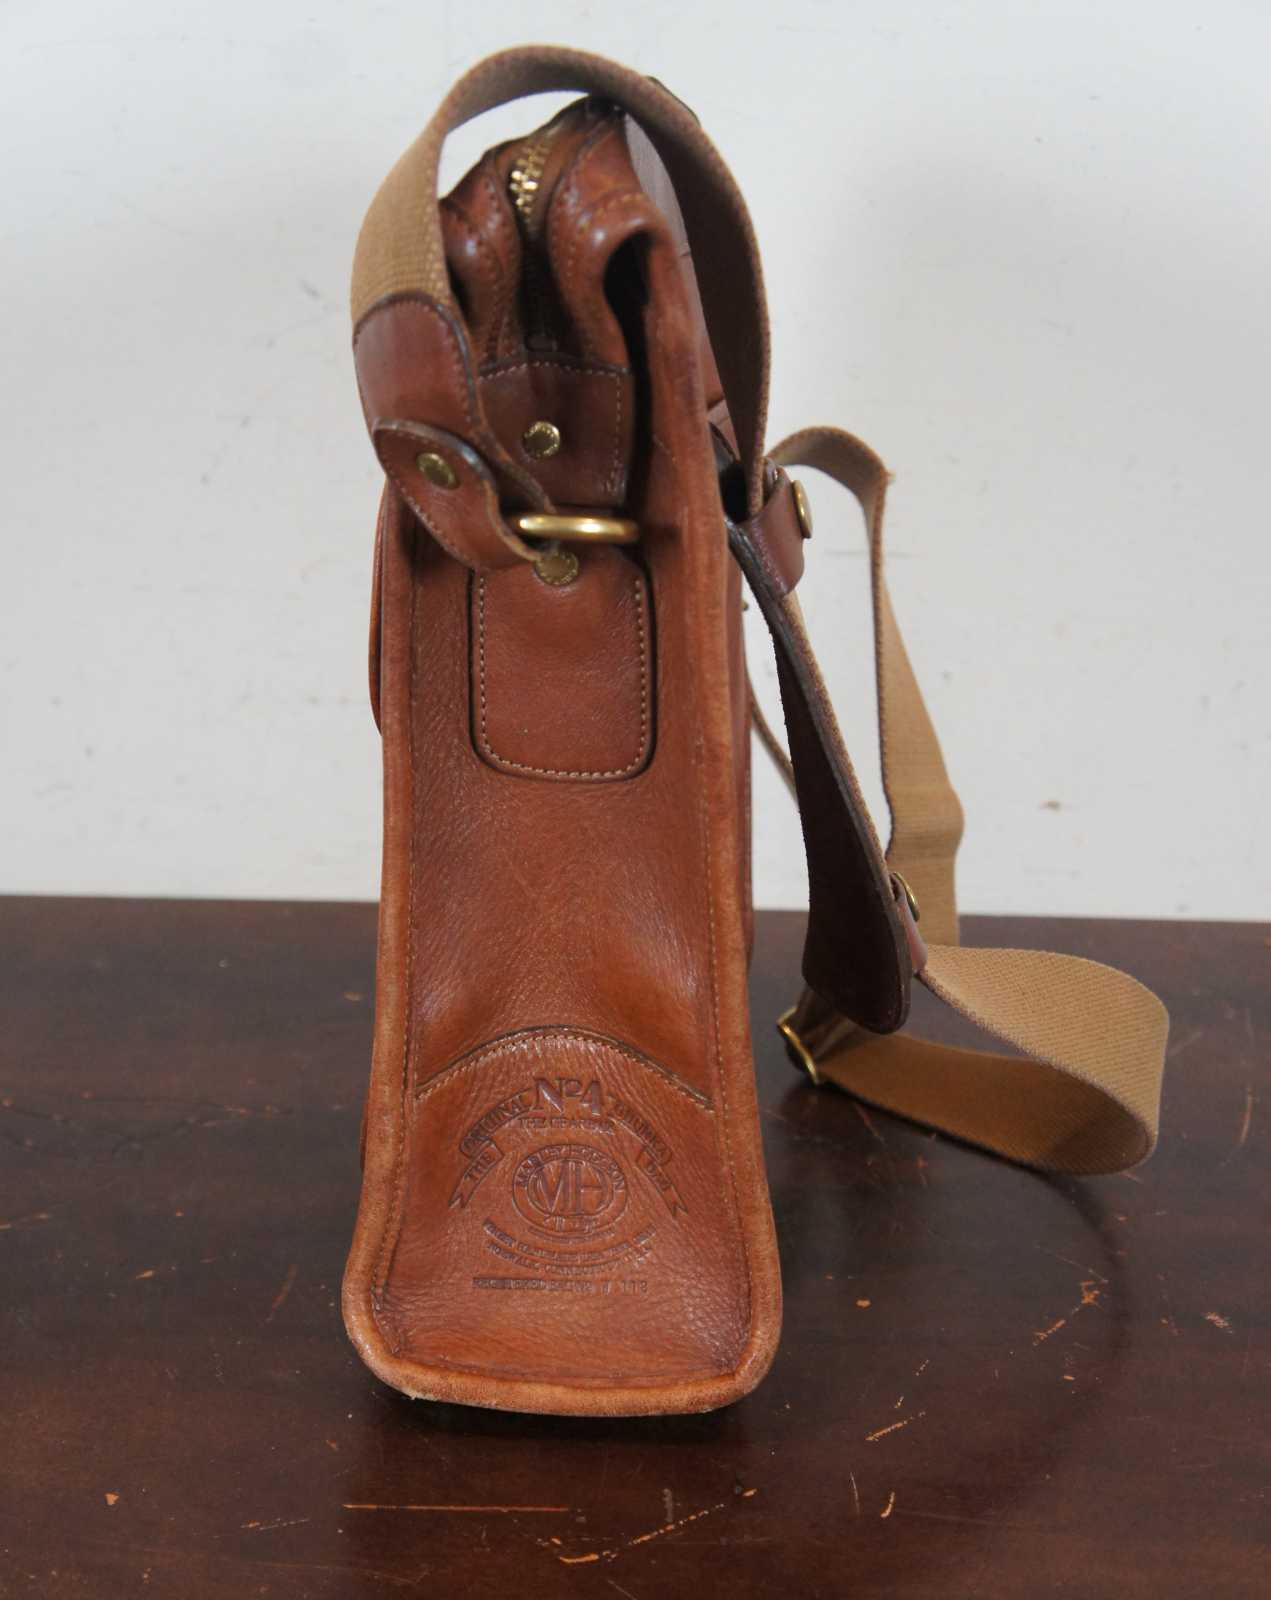 Vintage Marley Hodgson The Original Ghurka Bag No.16 The Keeper Leather